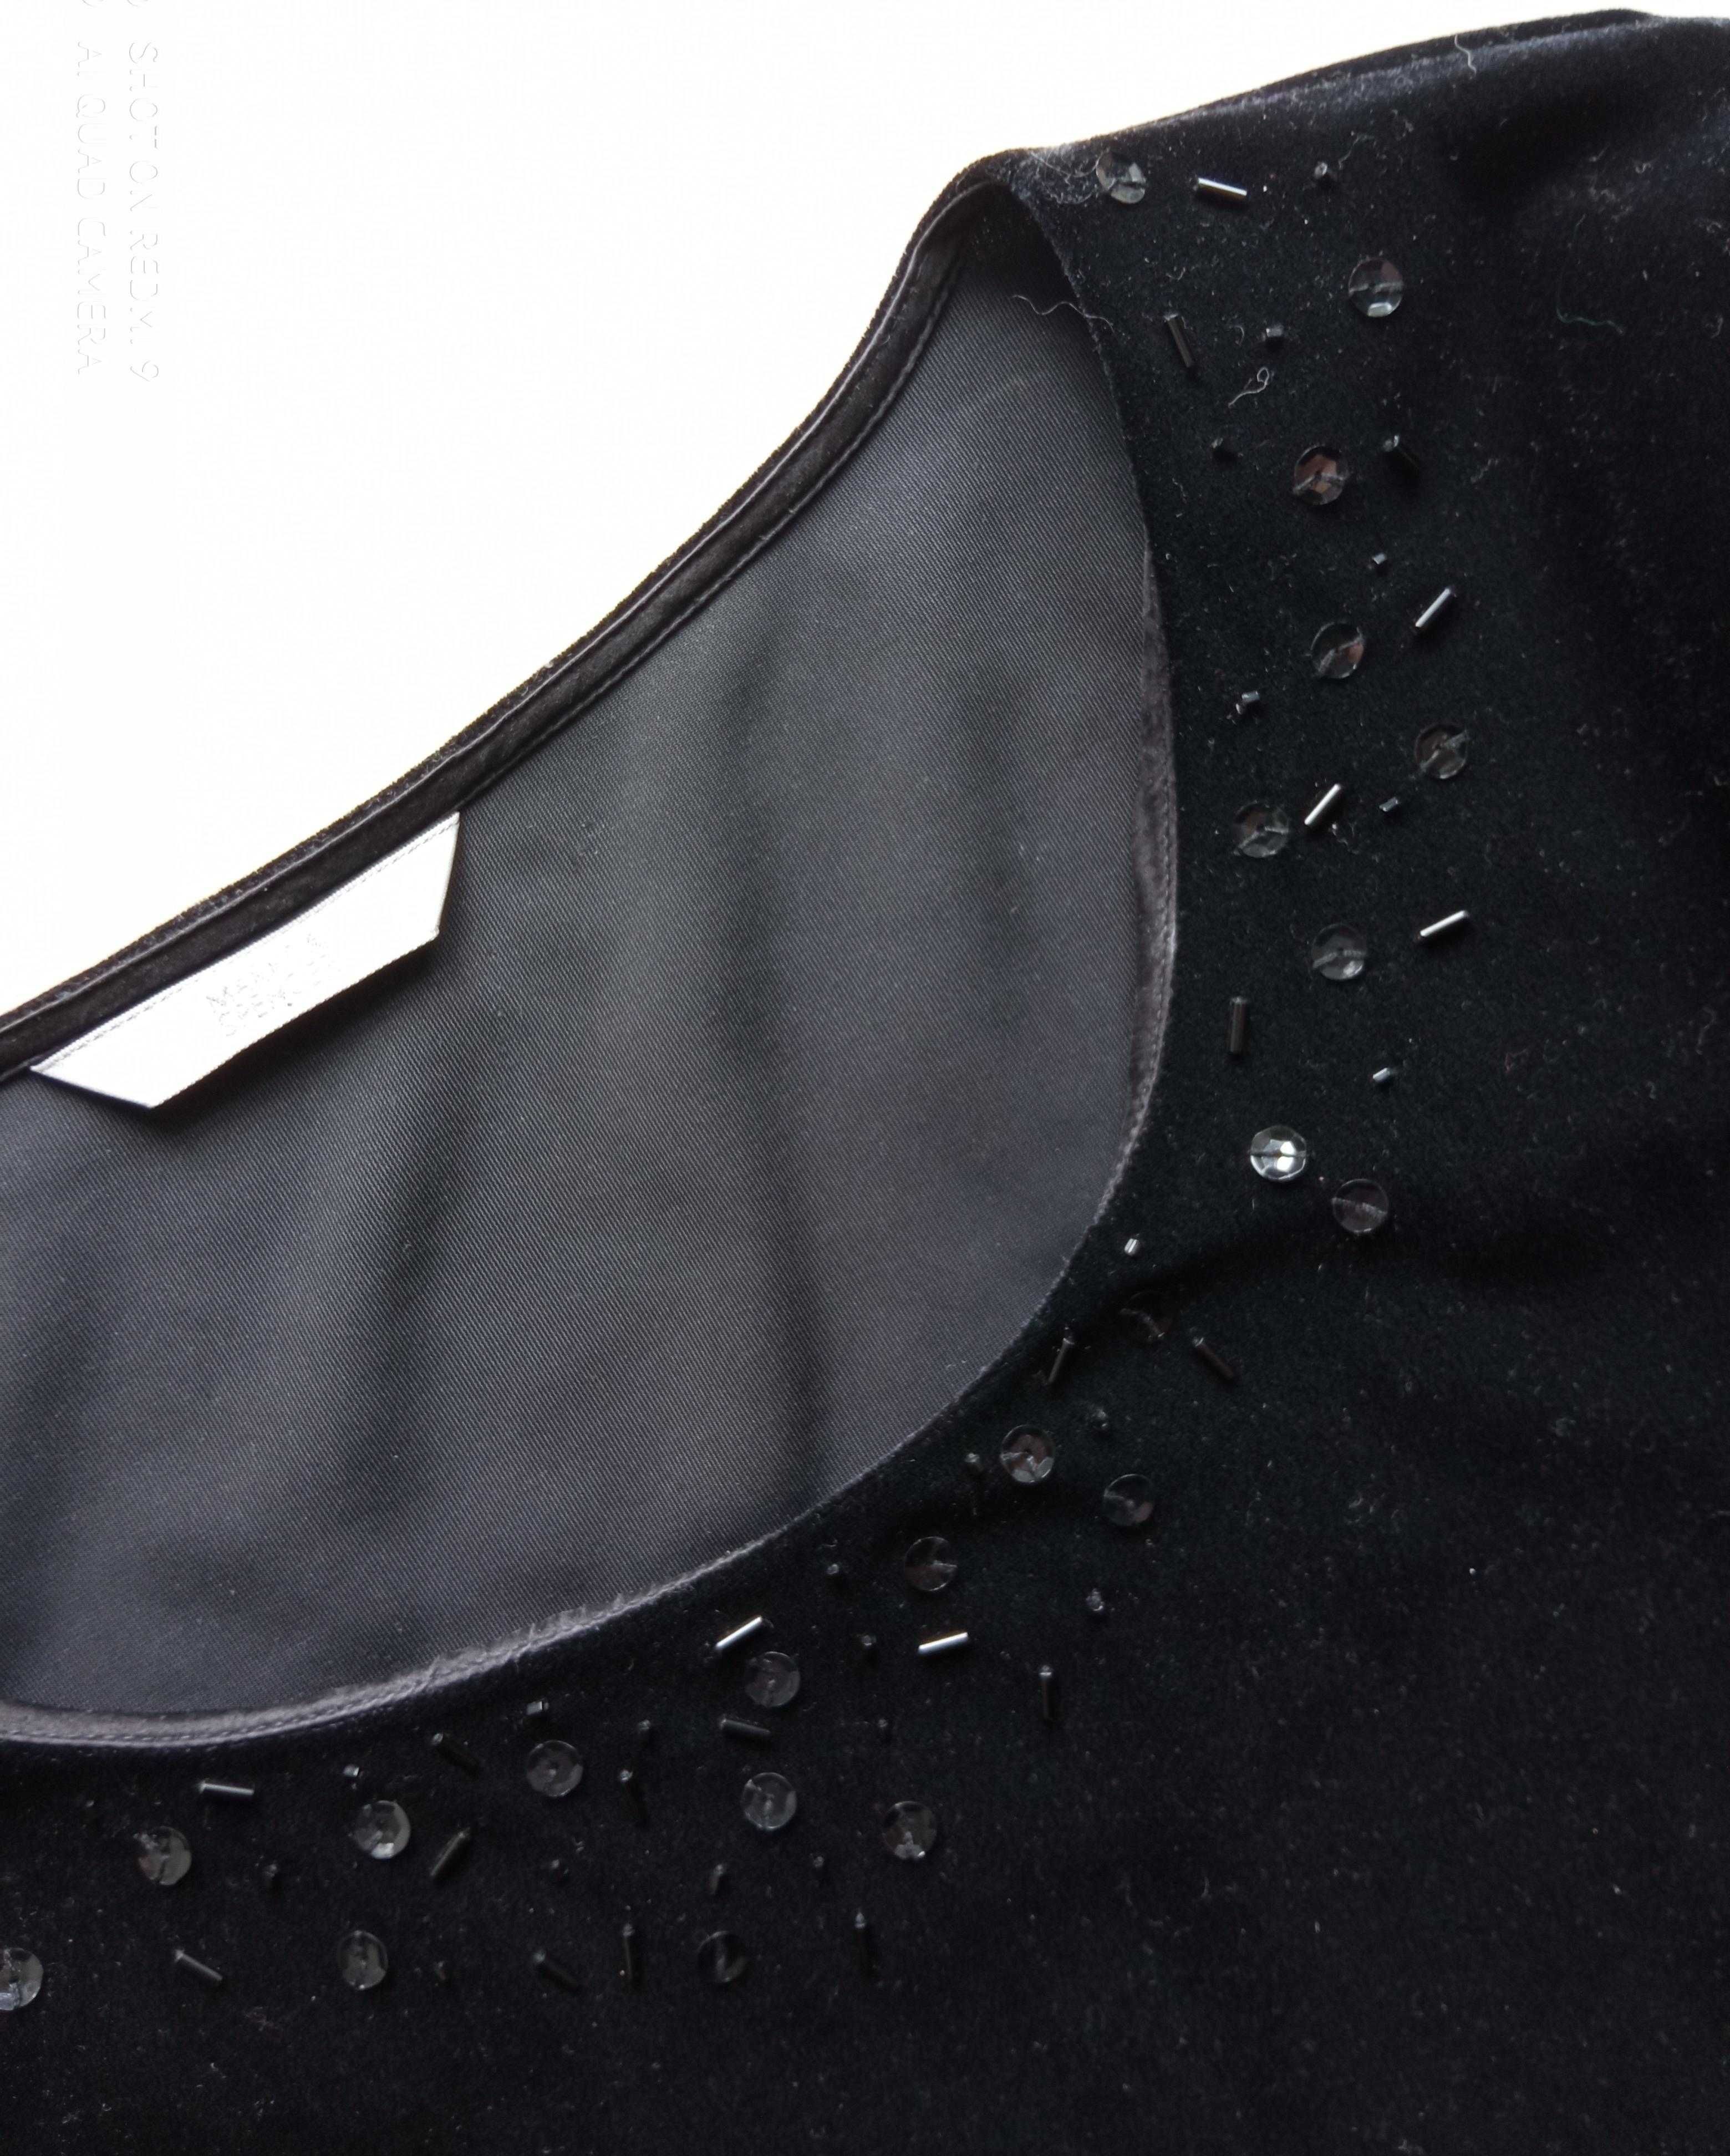 Marks & Spencer czarn bluzka tunika aksamit plusz 18 40 50 pachy 120cm